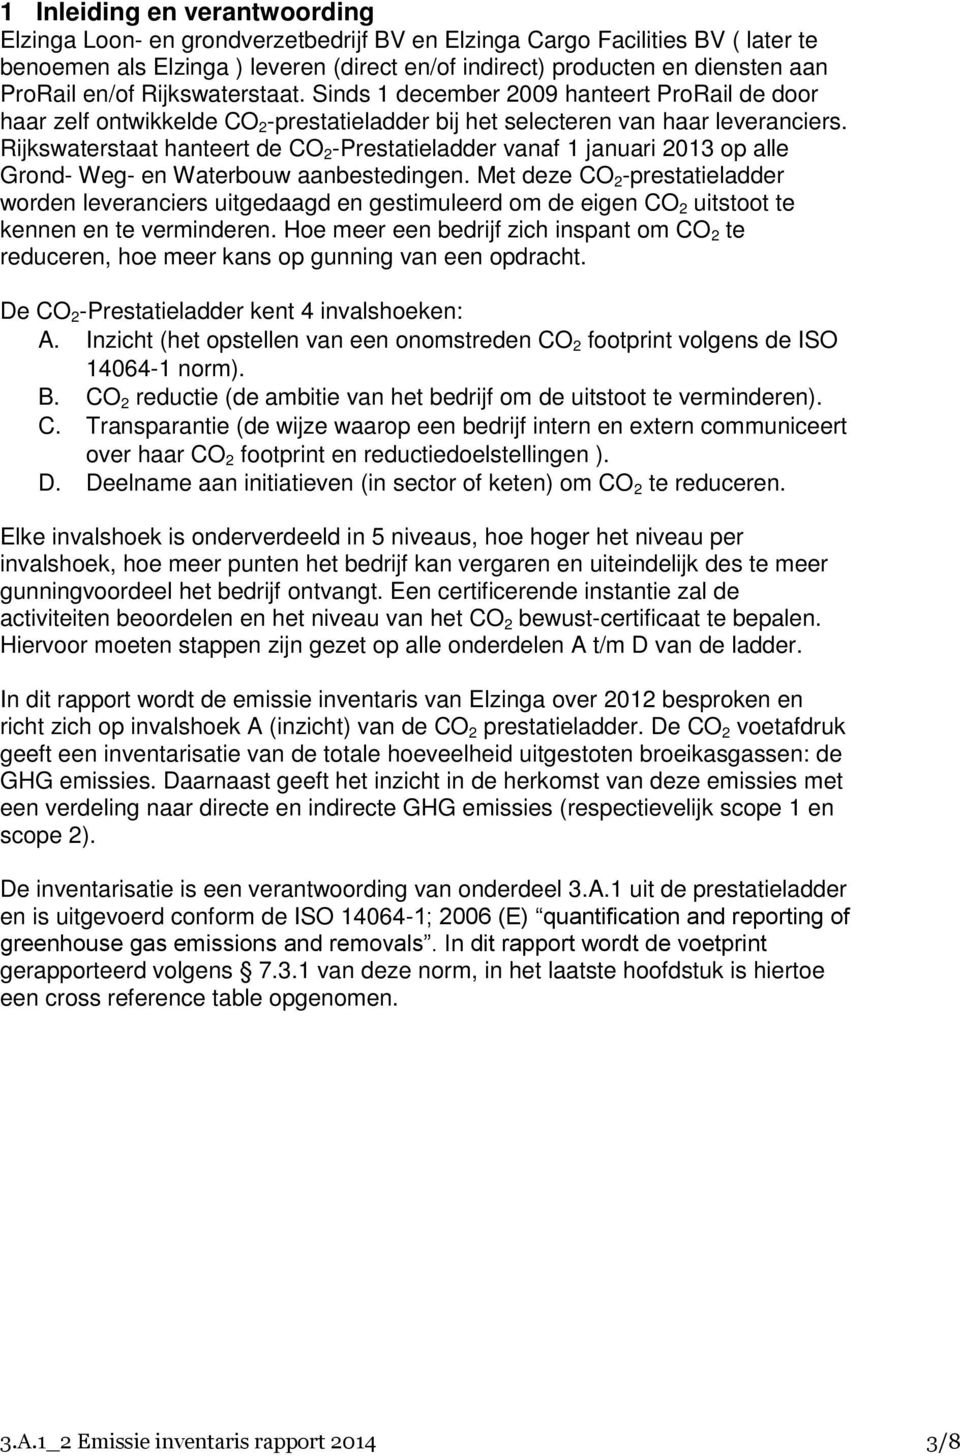 Rijkswaterstaat hanteert de CO 2 -Prestatieladder vanaf 1 januari 2013 op alle Grond- Weg- en Waterbouw aanbestedingen.